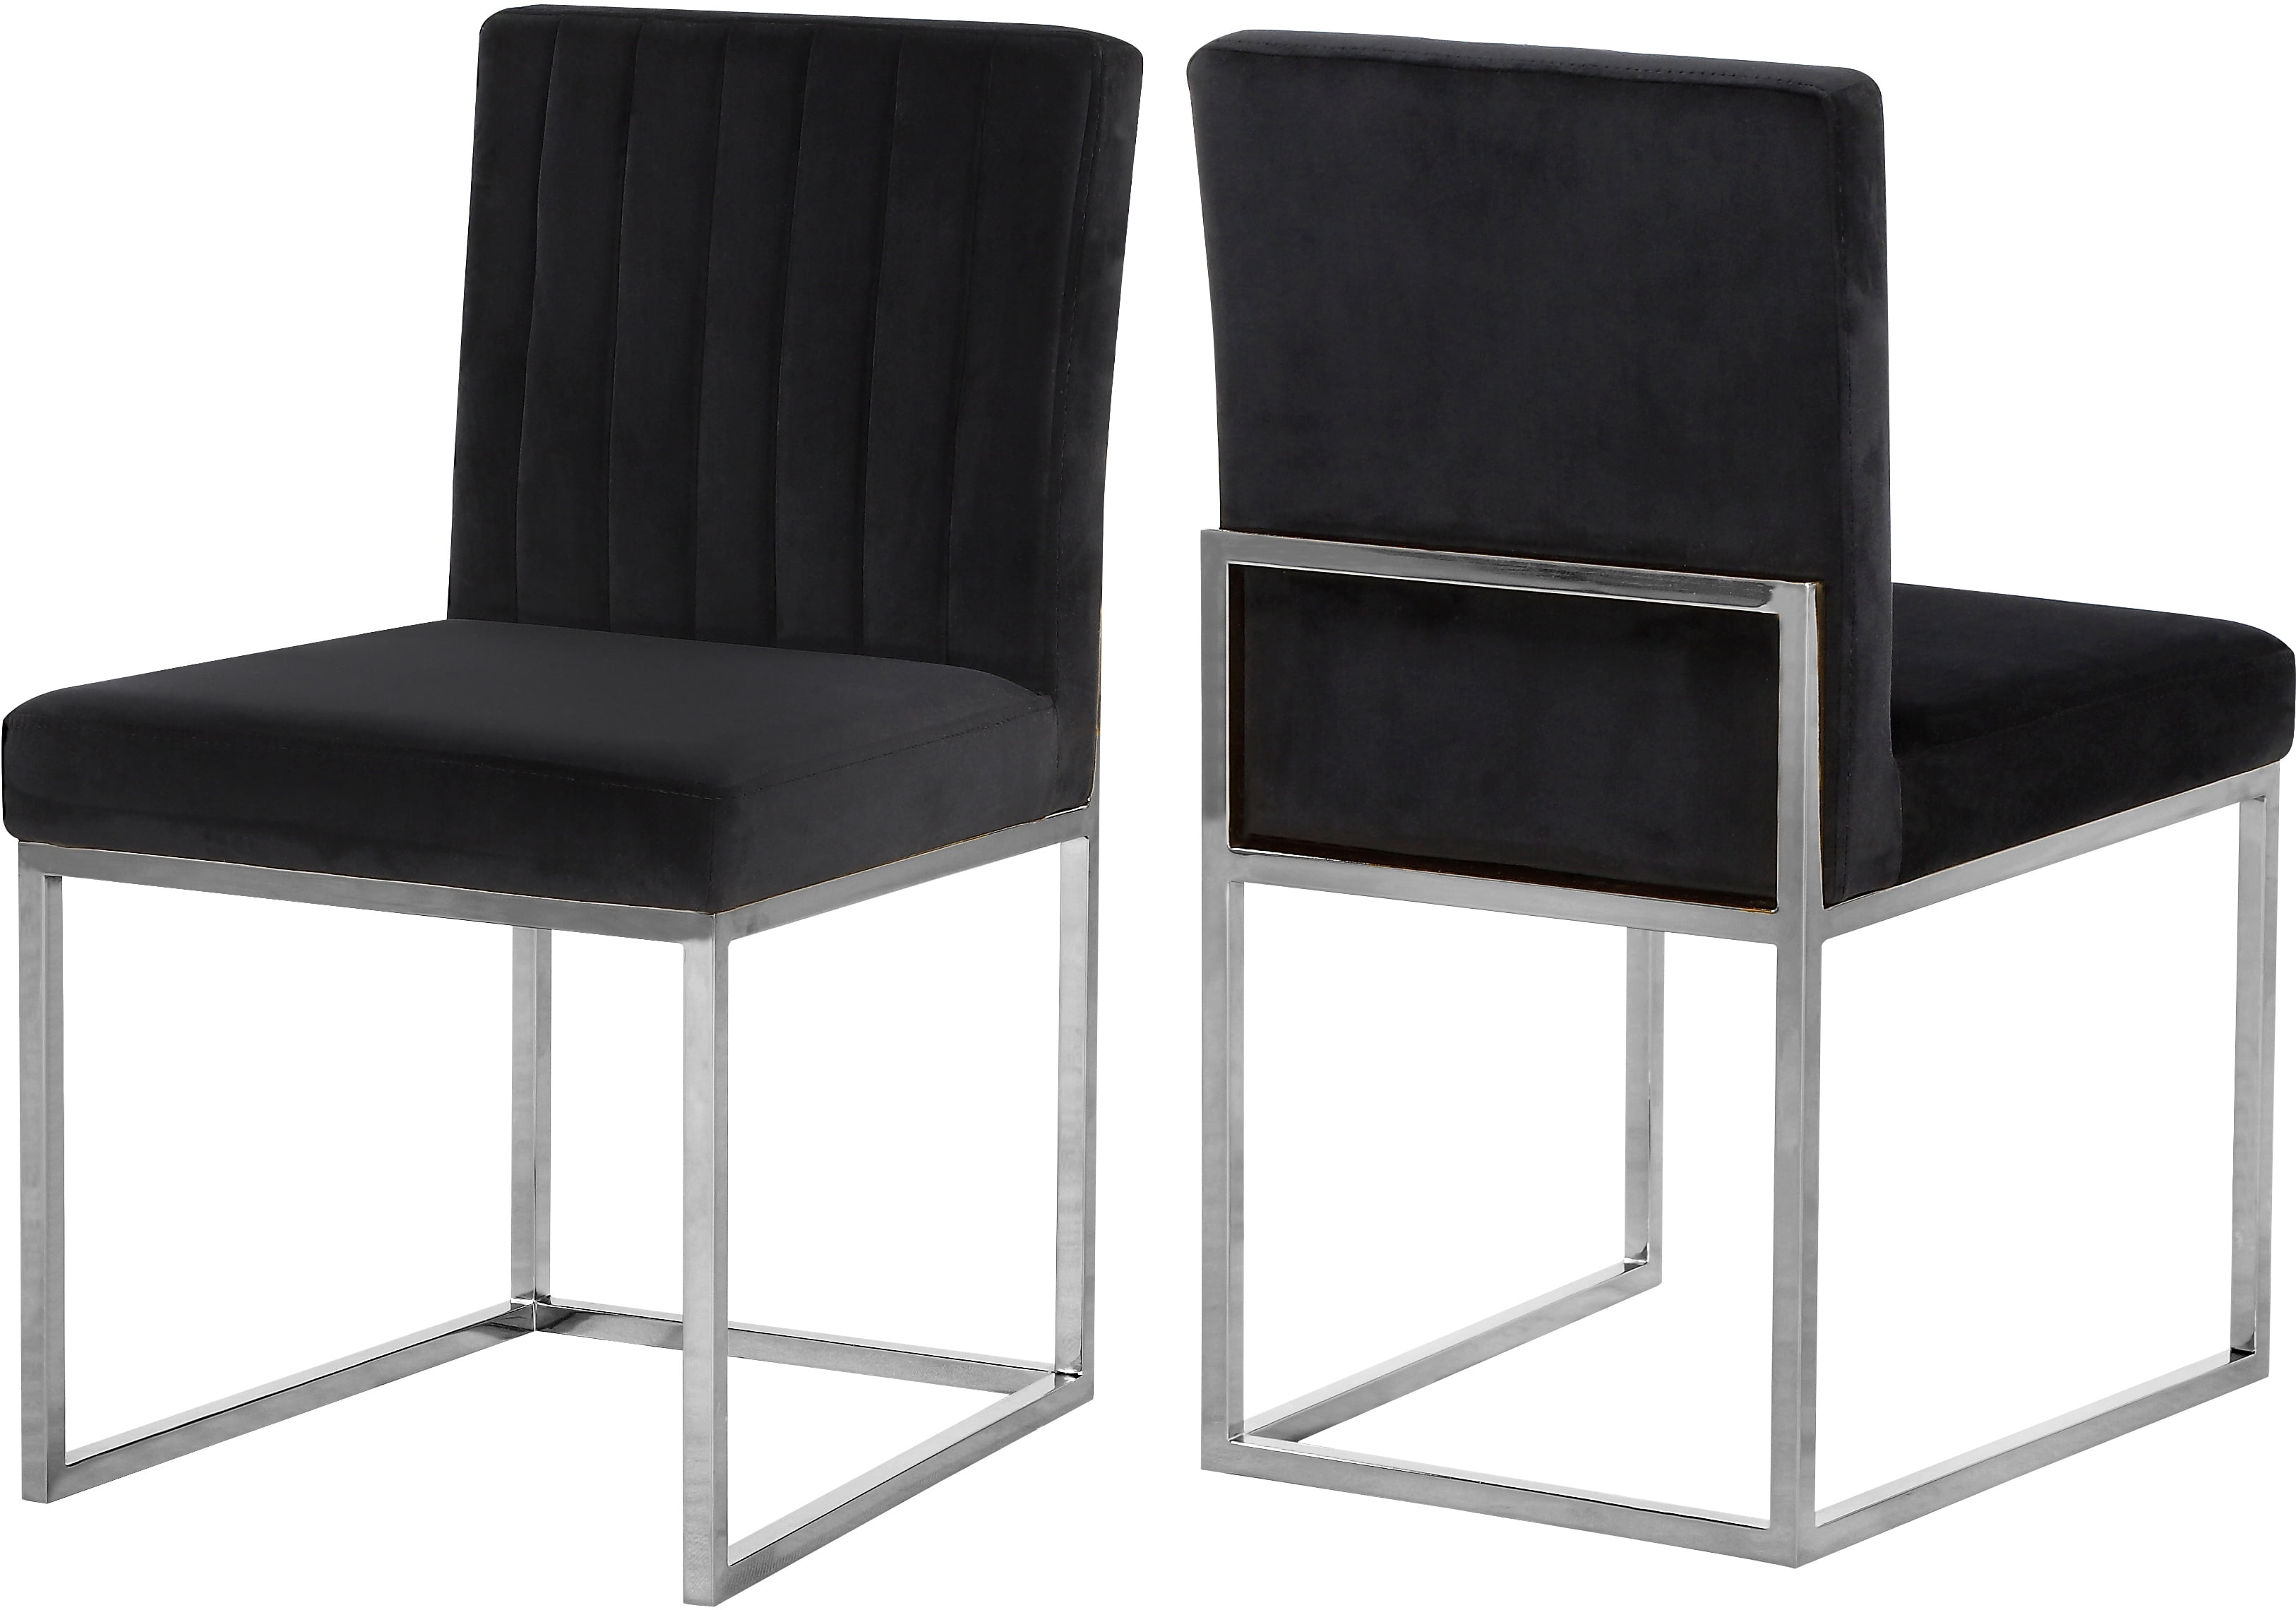 Black Velvet Chairs Formal Dining Room